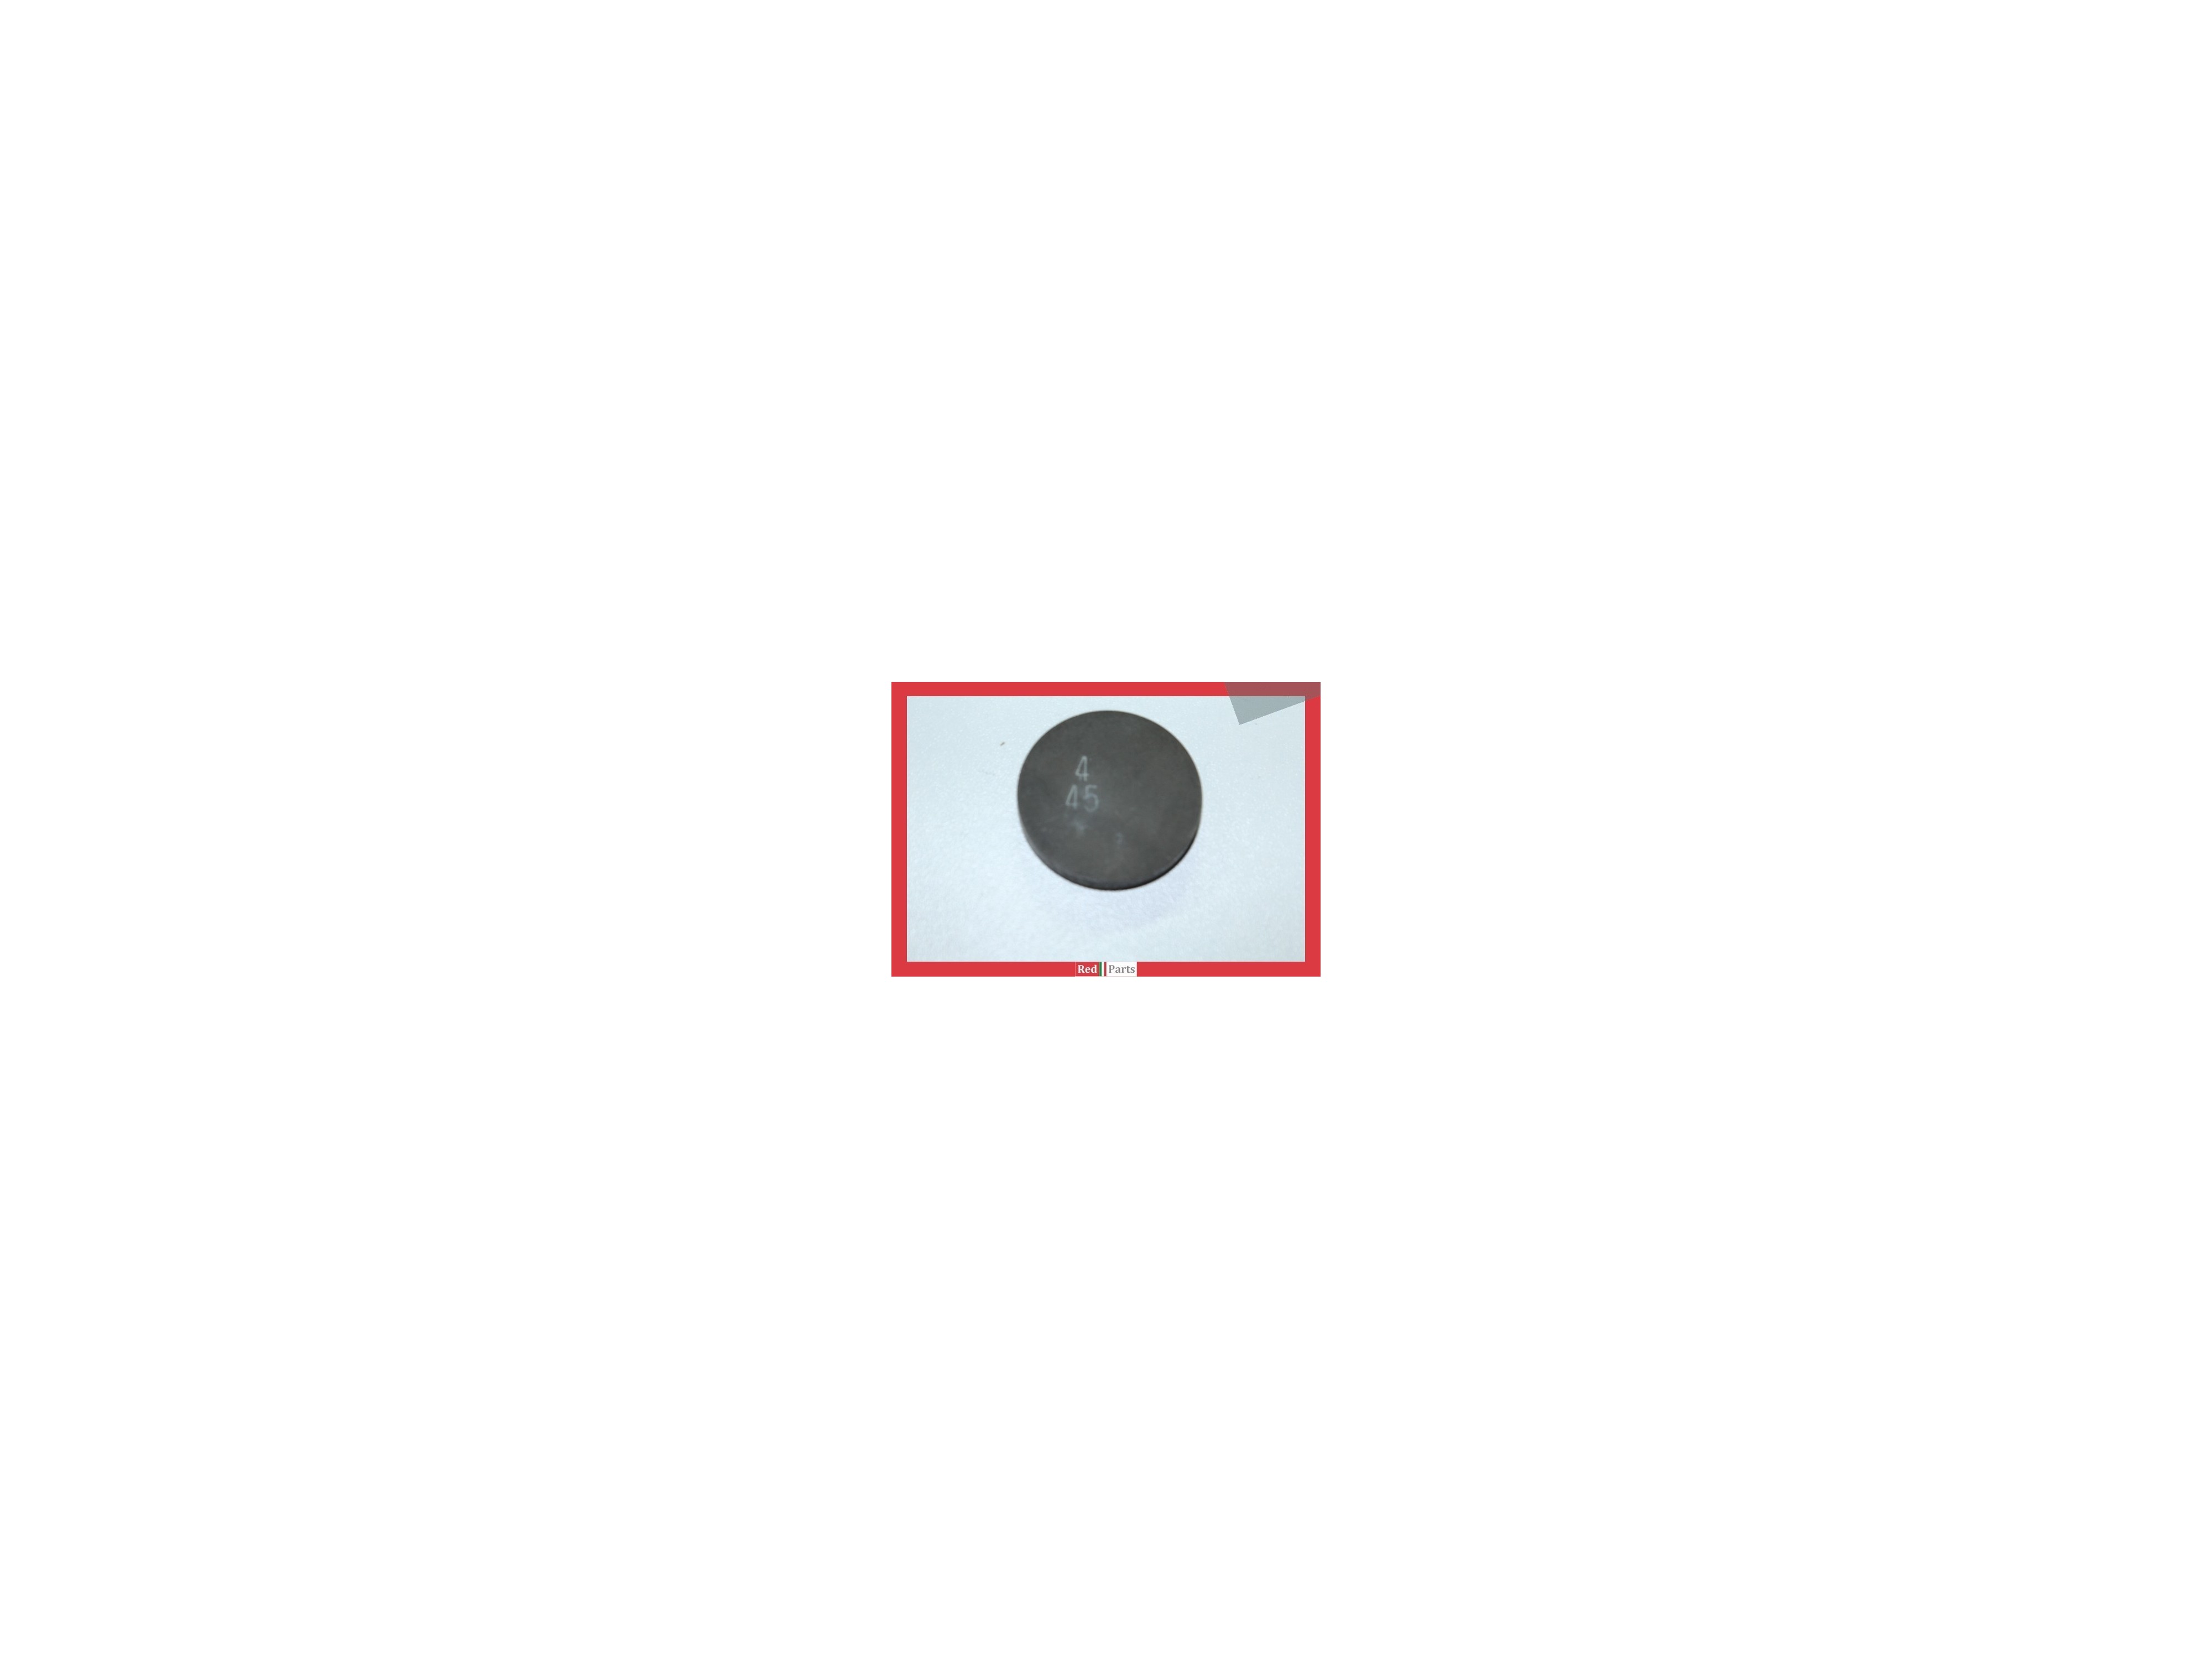 Pastille de réglage du jeu aux soupapes 4,45 mm (diamètre 33) (102852)